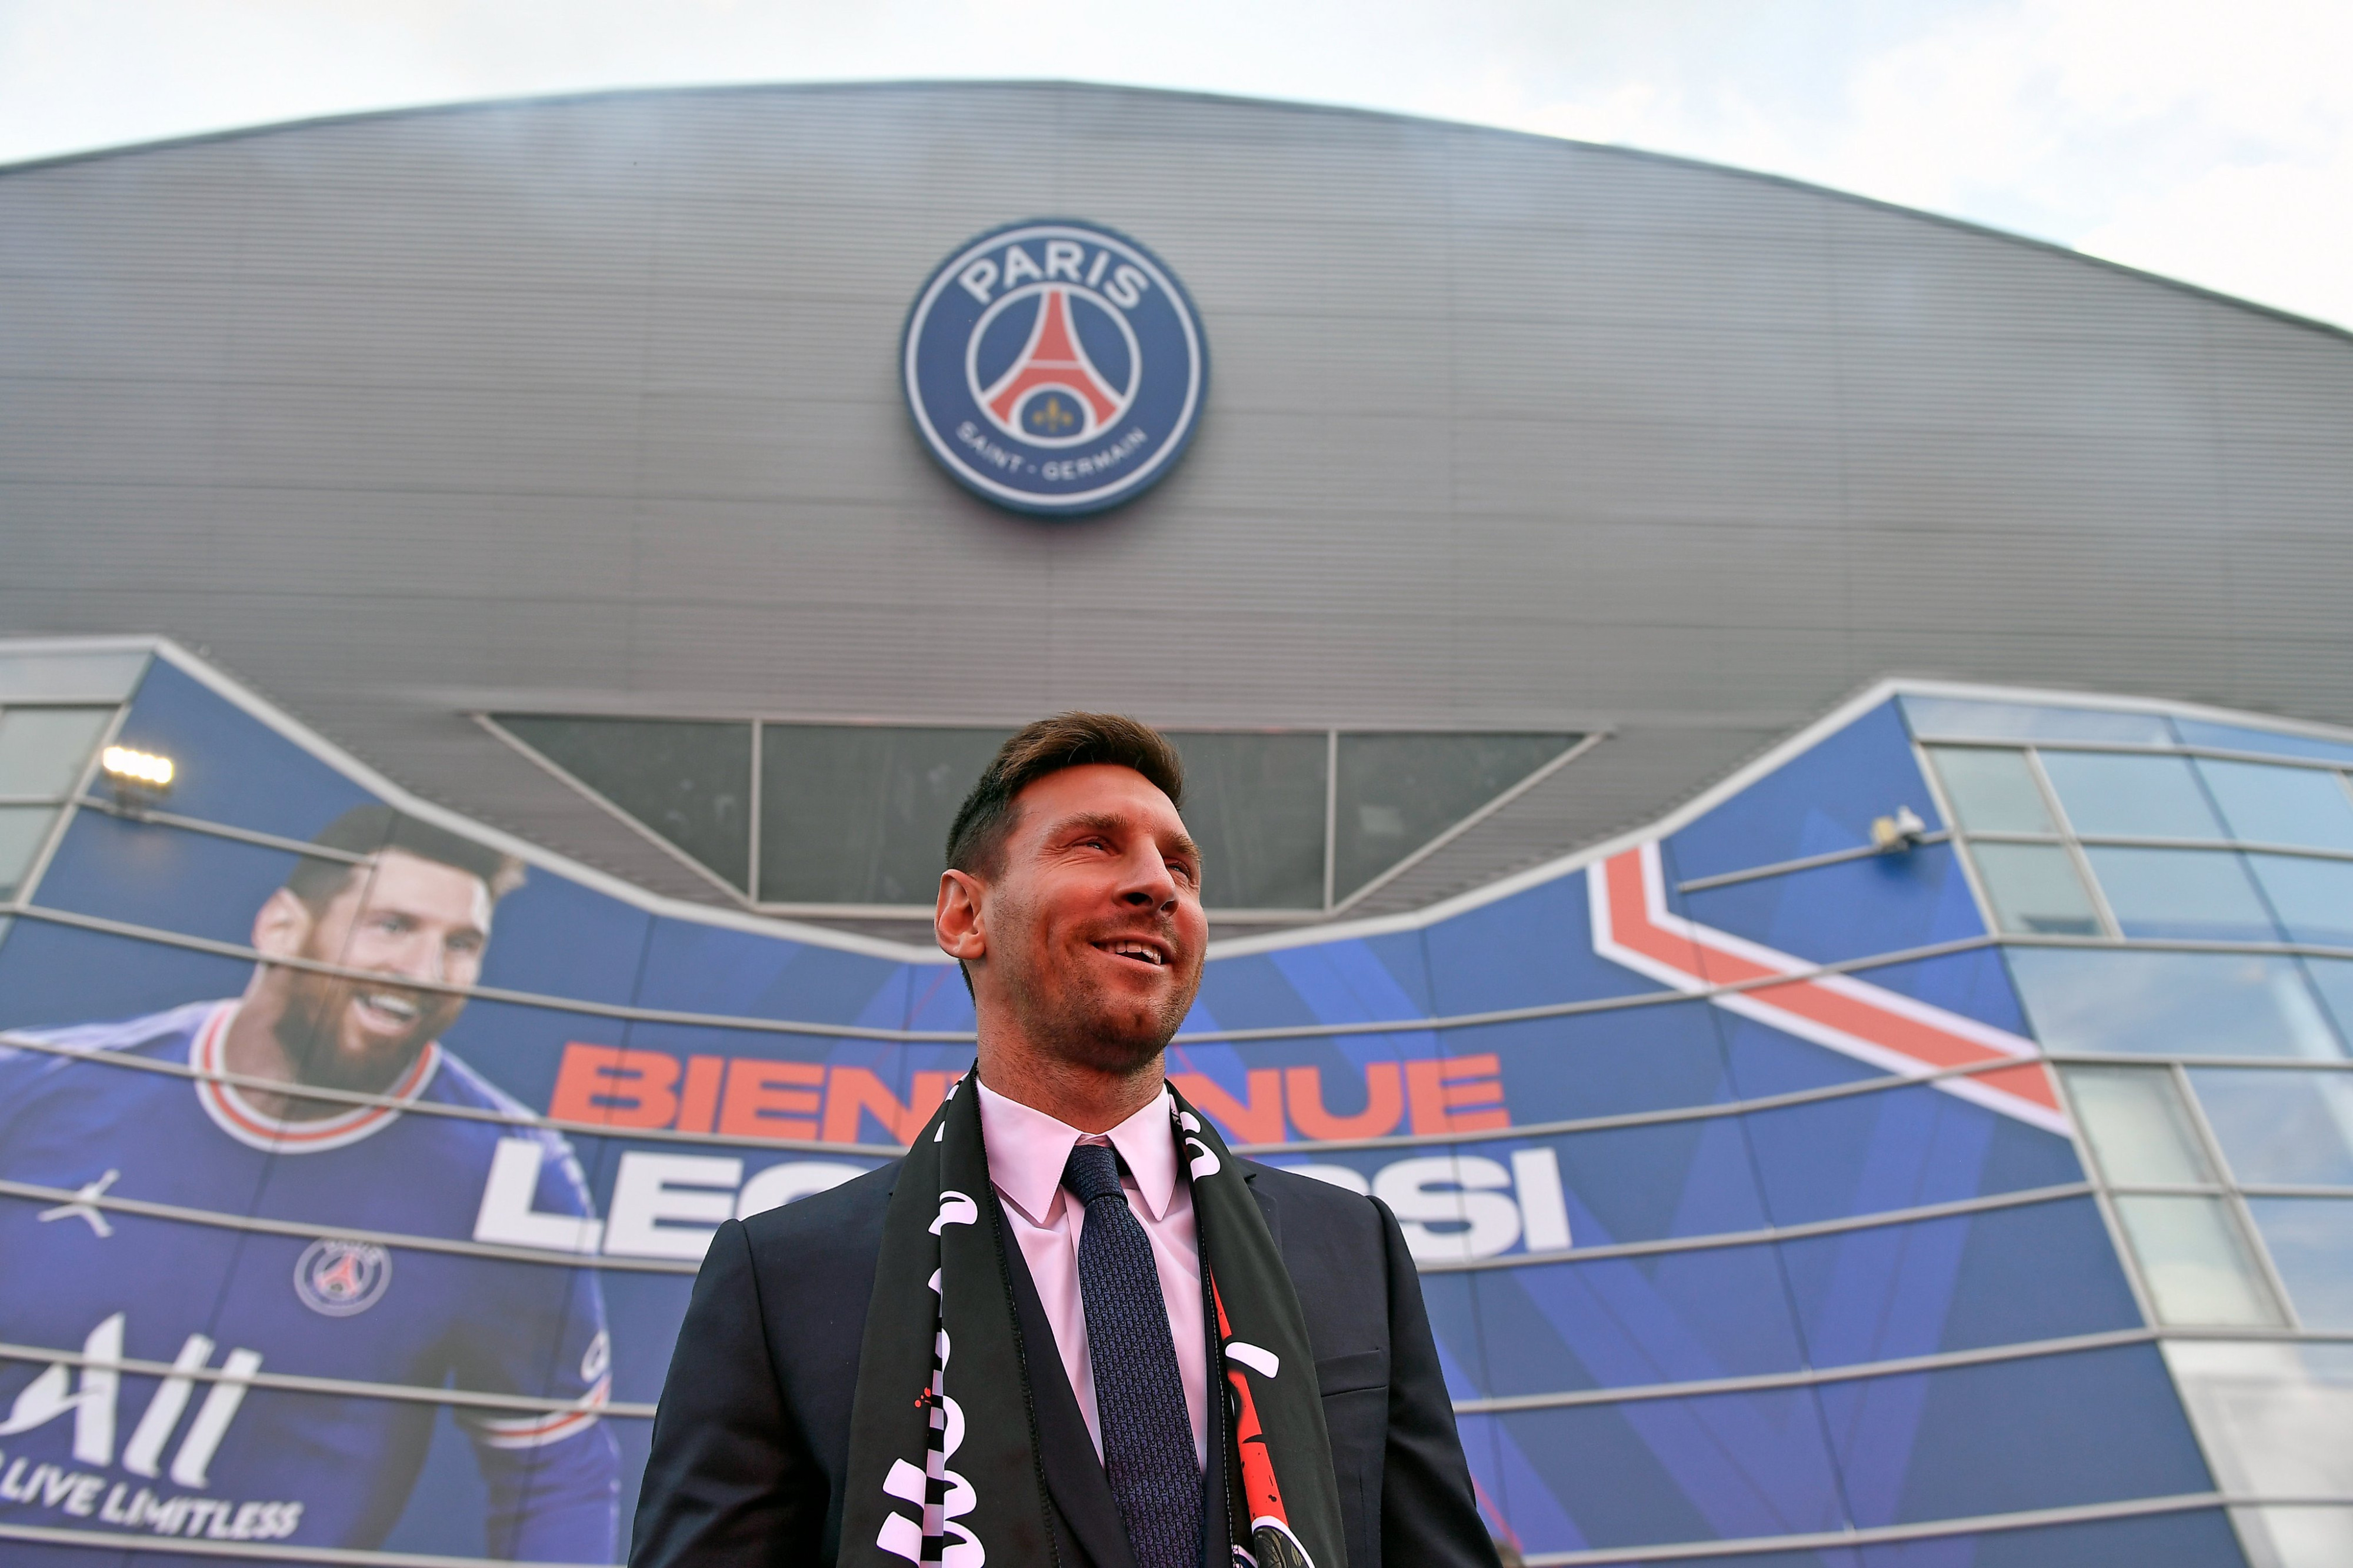 Leo Messi en una imagen de su presentación con el París Saint-Germain / PSG